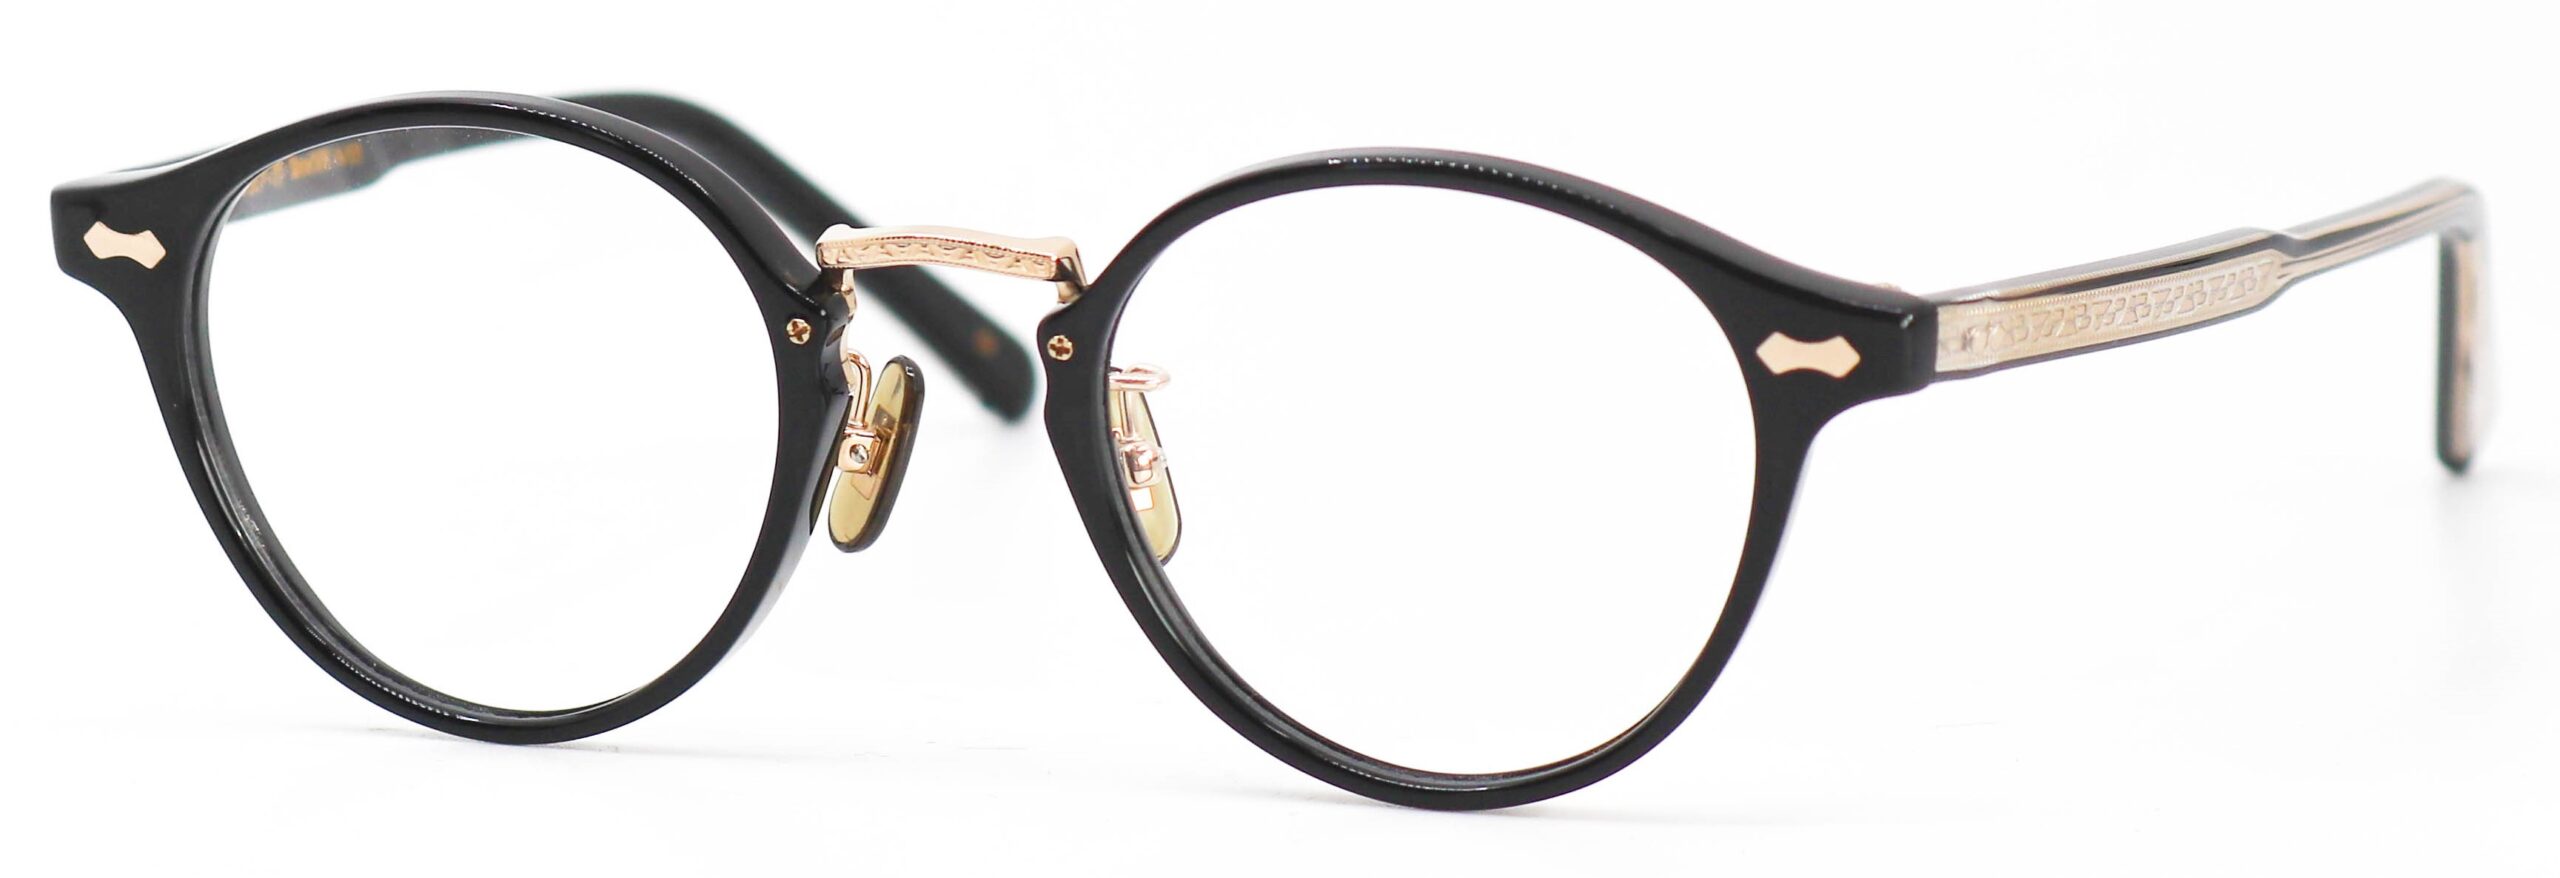 眼鏡のカラータイプC-1 Black-Clear/Gold